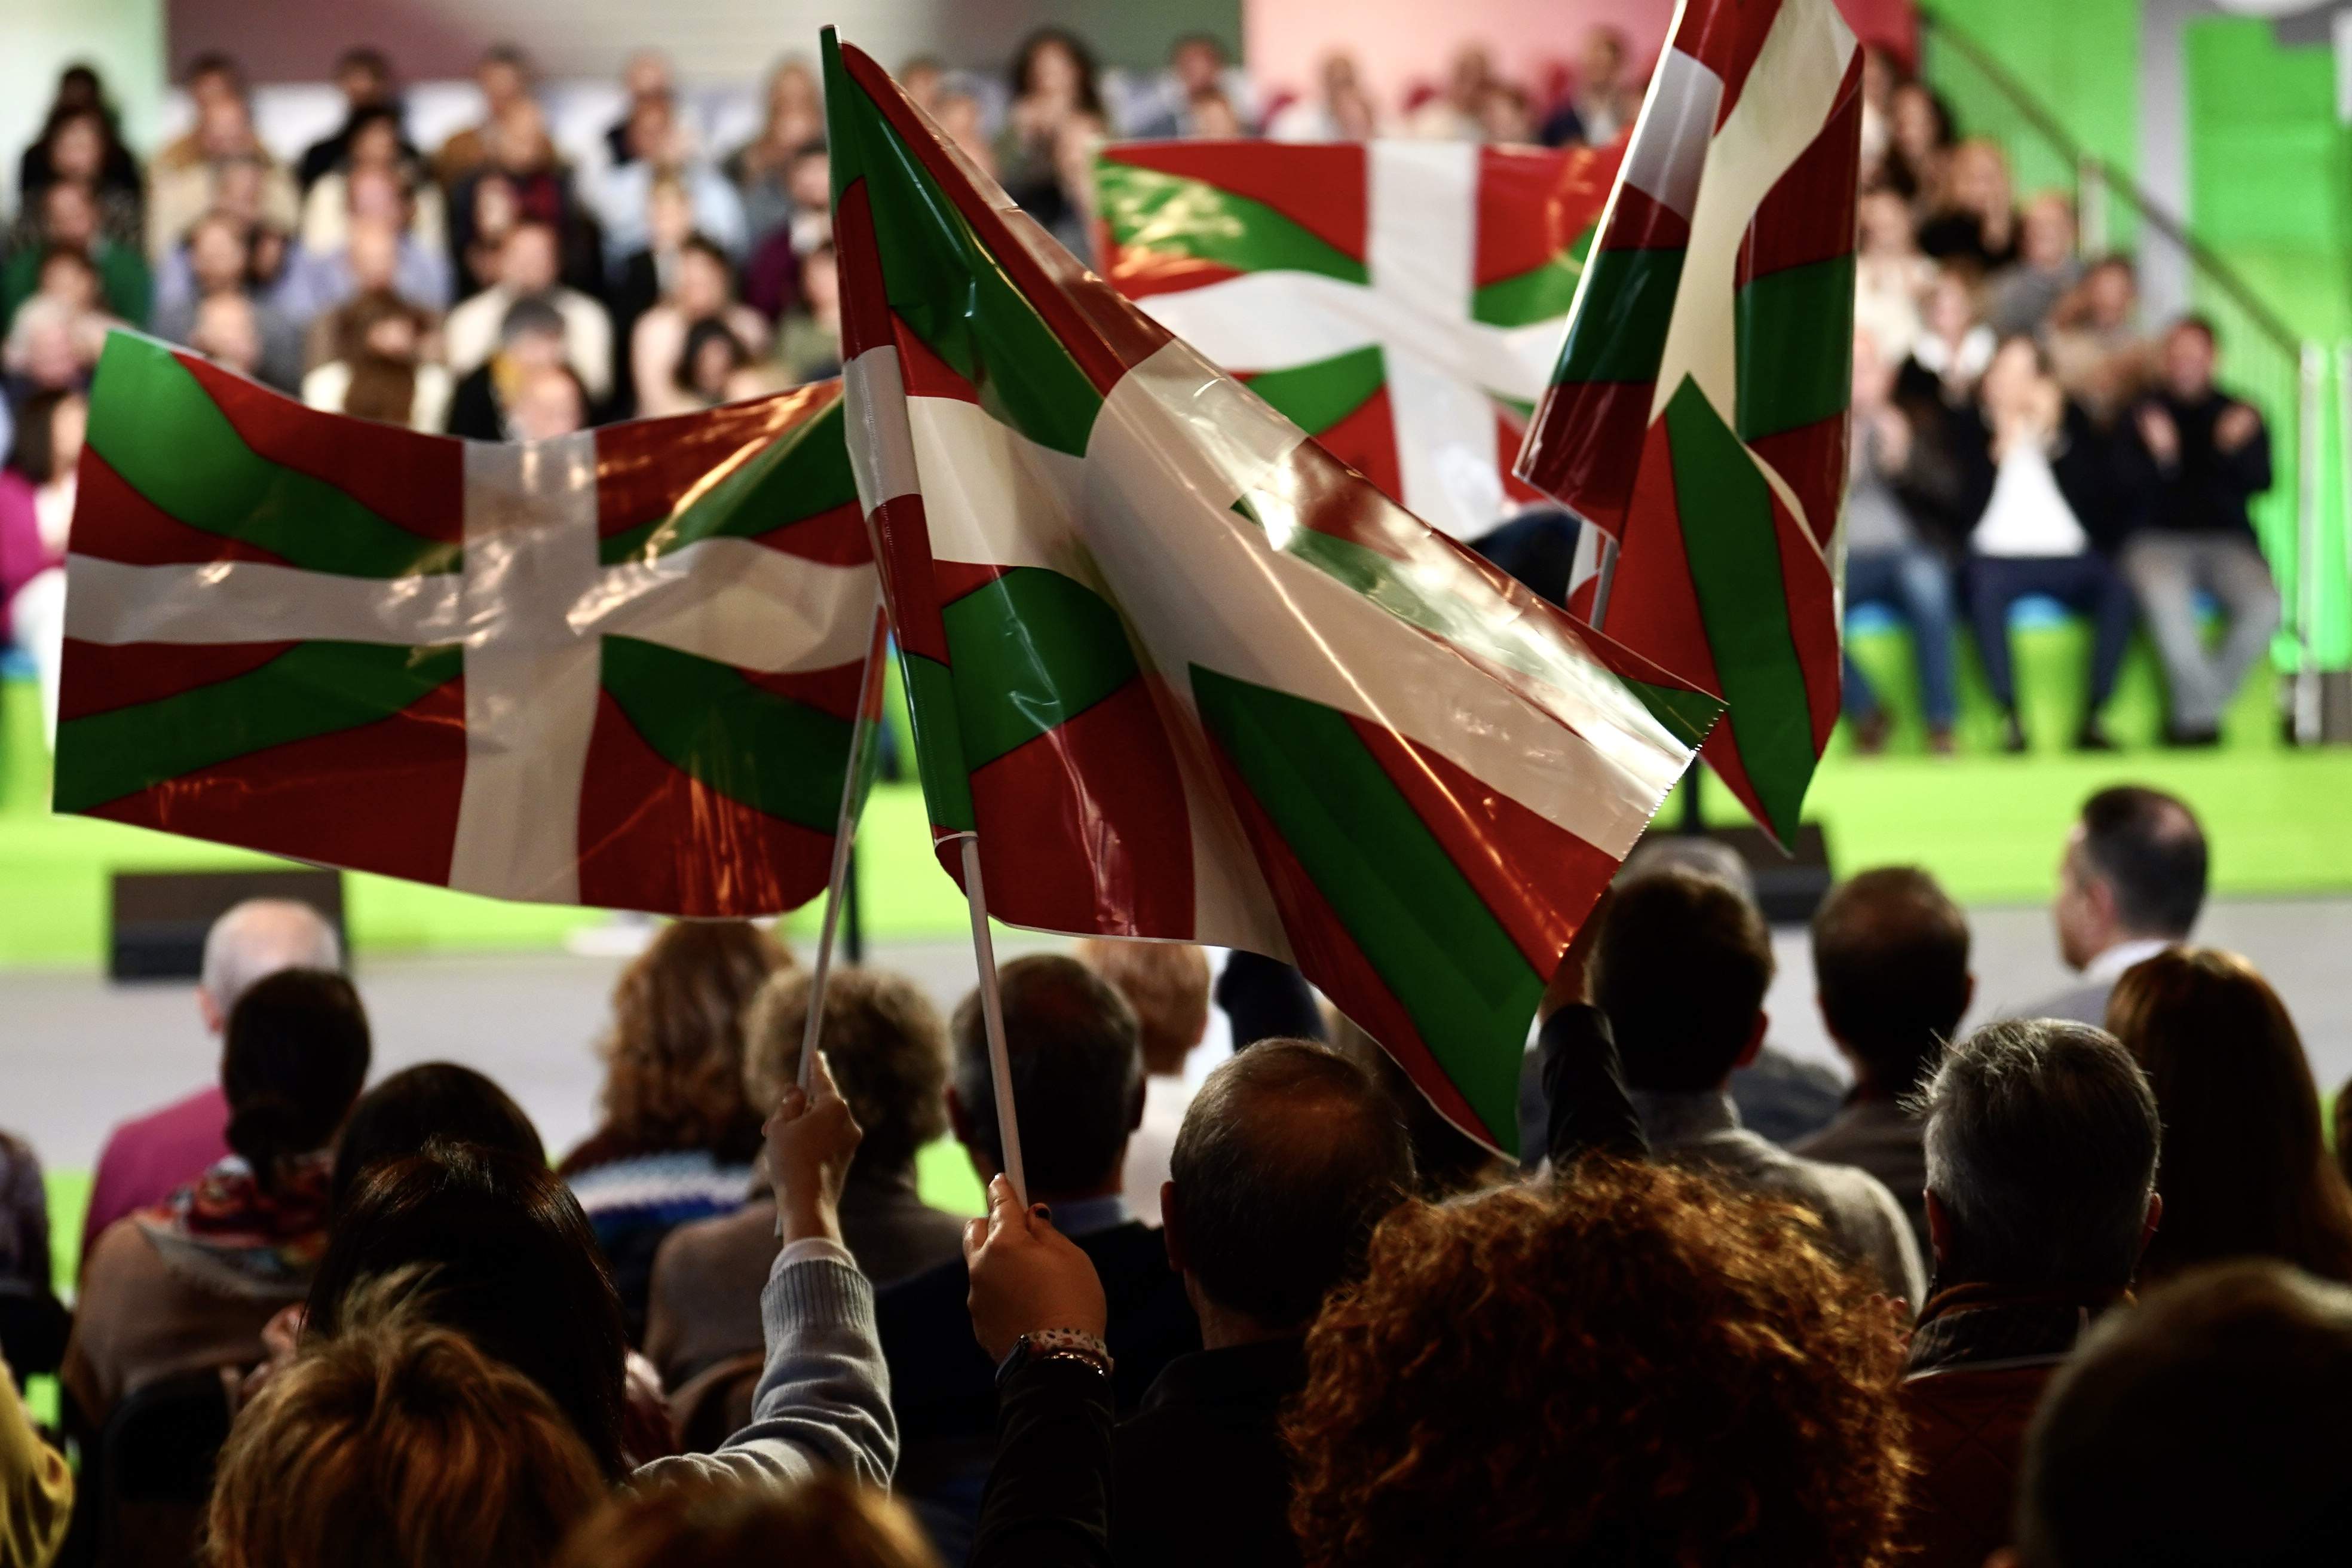 Un empat entre EH Bildu i PNB deixa la governabilitat basca en mans socialistes, segons una enquesta